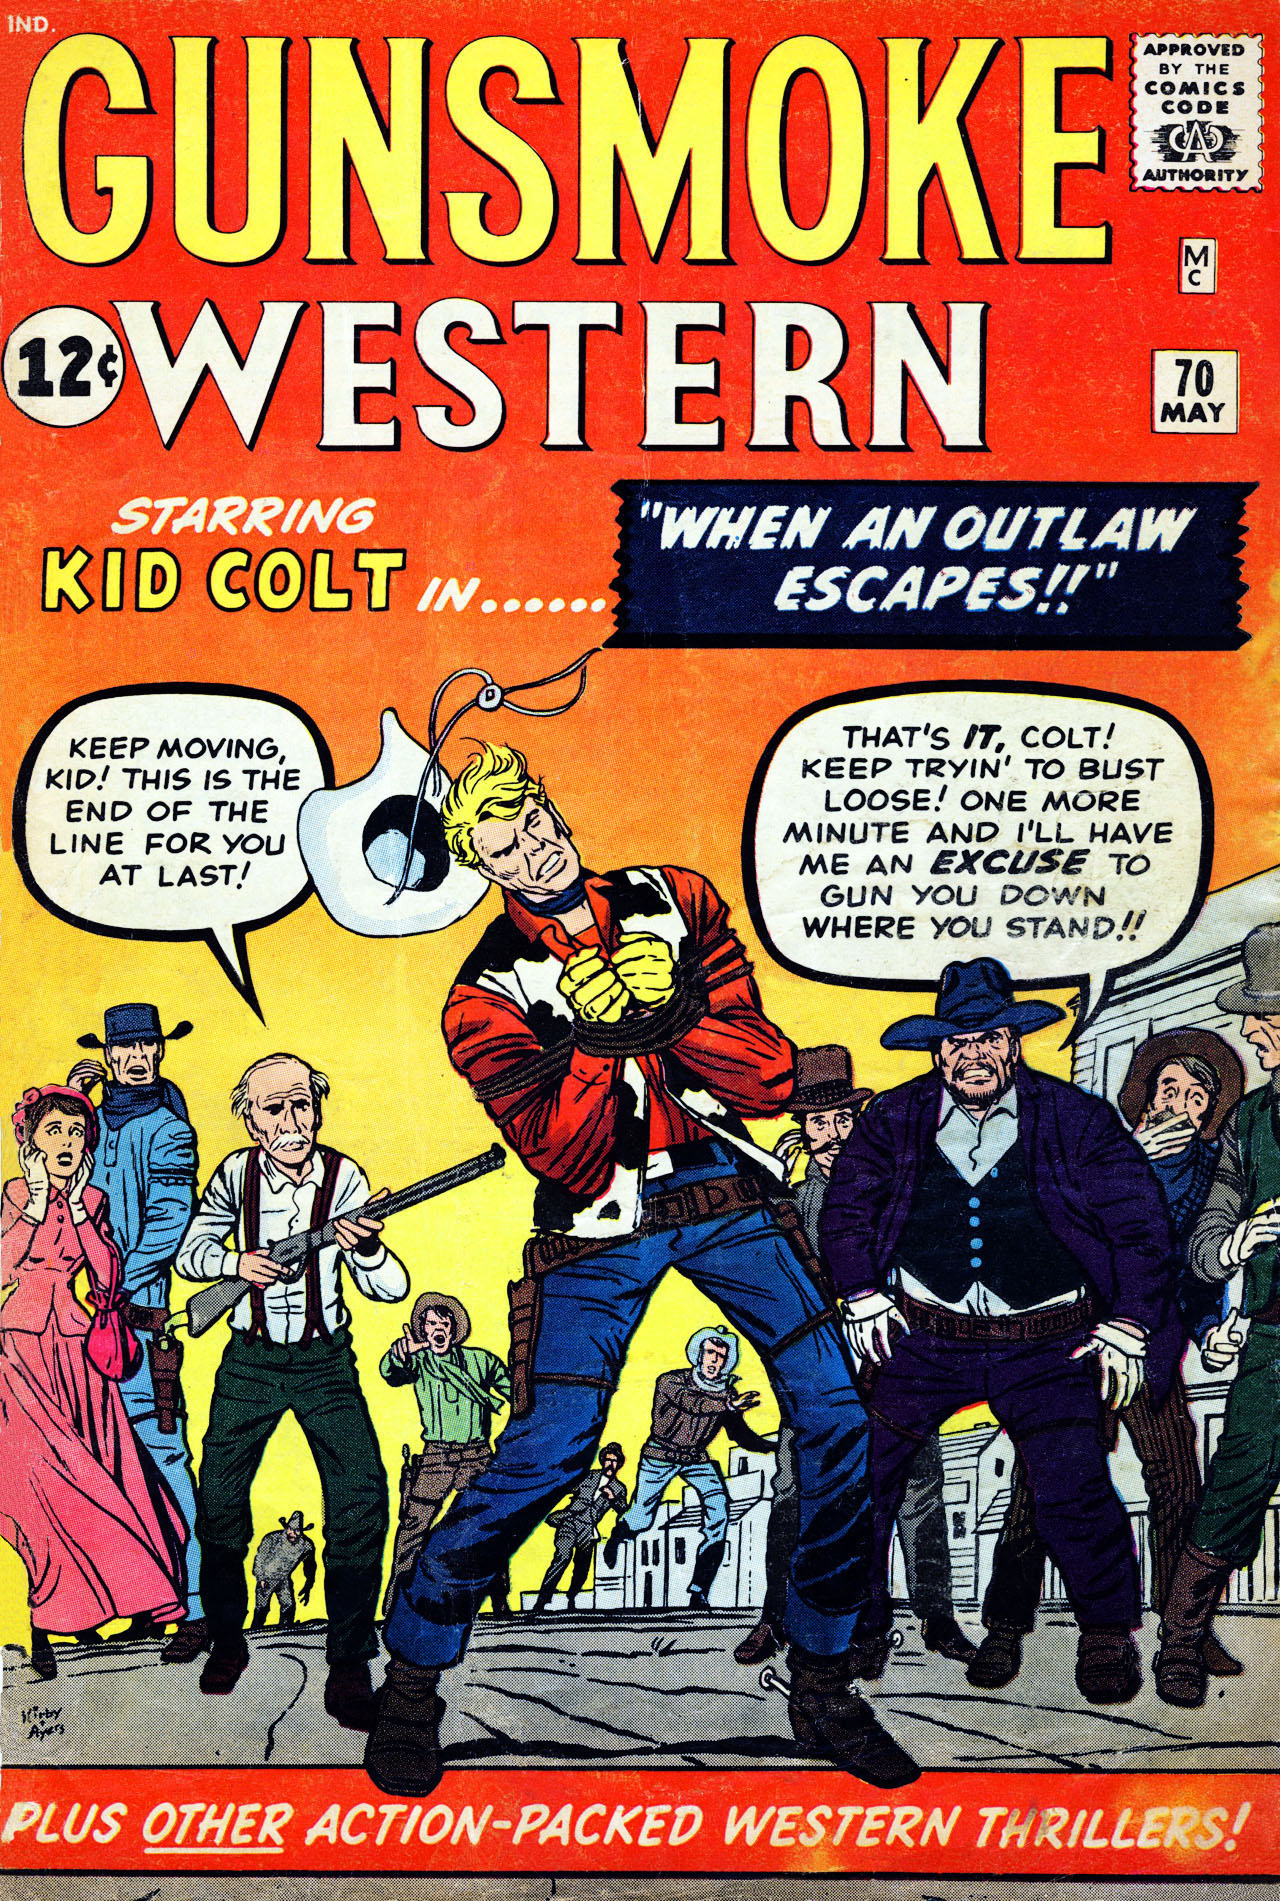 Read online Gunsmoke Western comic -  Issue #70 - 1